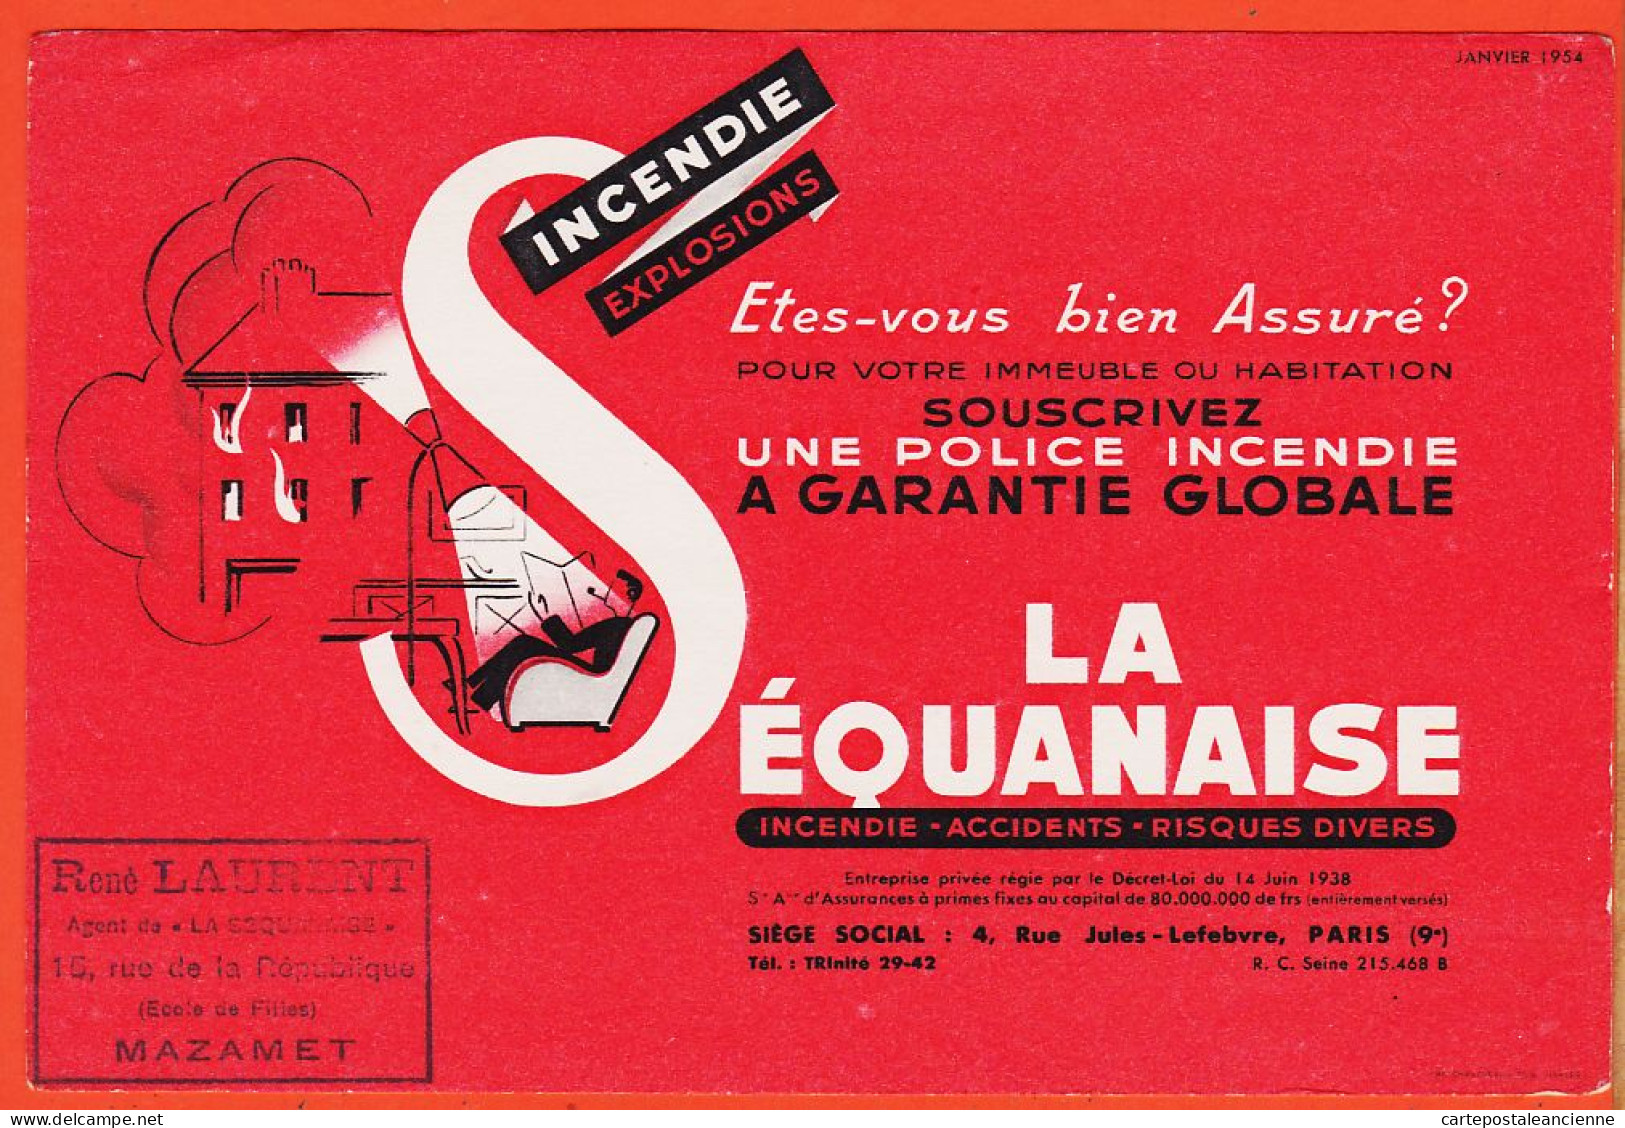 06161 / Janvier 1954 SEQUANAISE Capitalisation PARIS Rue Jules LEFEBVRE Tampon René LAURENT Agent Mazamet Buvard - Banque & Assurance